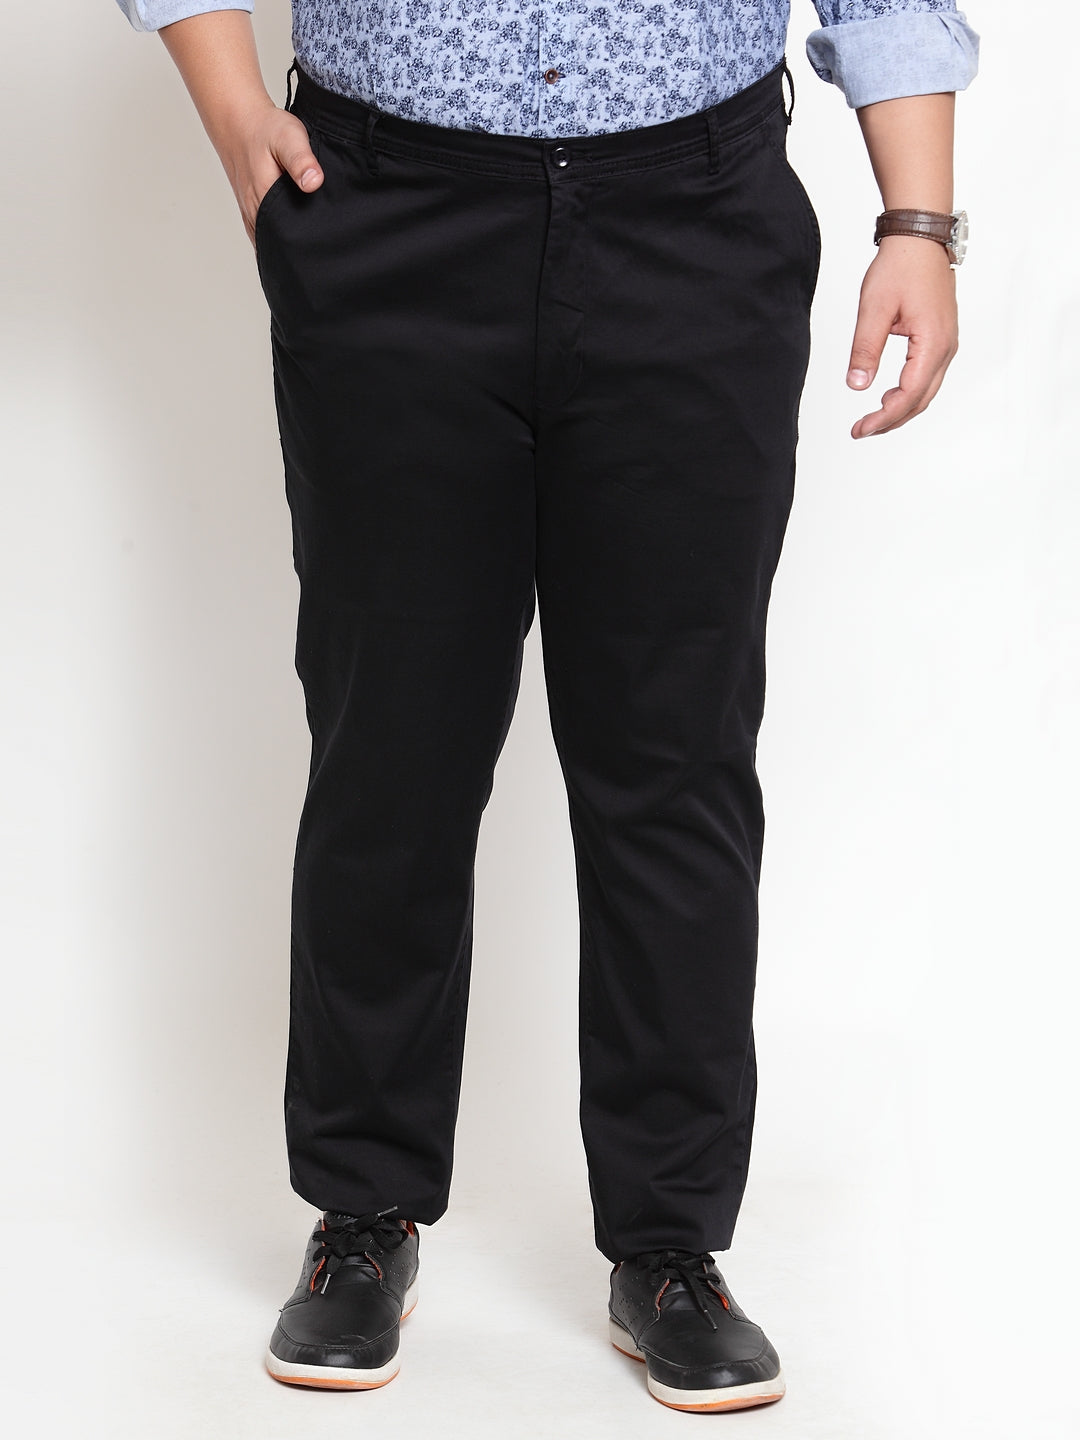 Buy Clivemont Men's Jet Black Formal Regular Fit Trouser CLJB2 (28) at  Amazon.in